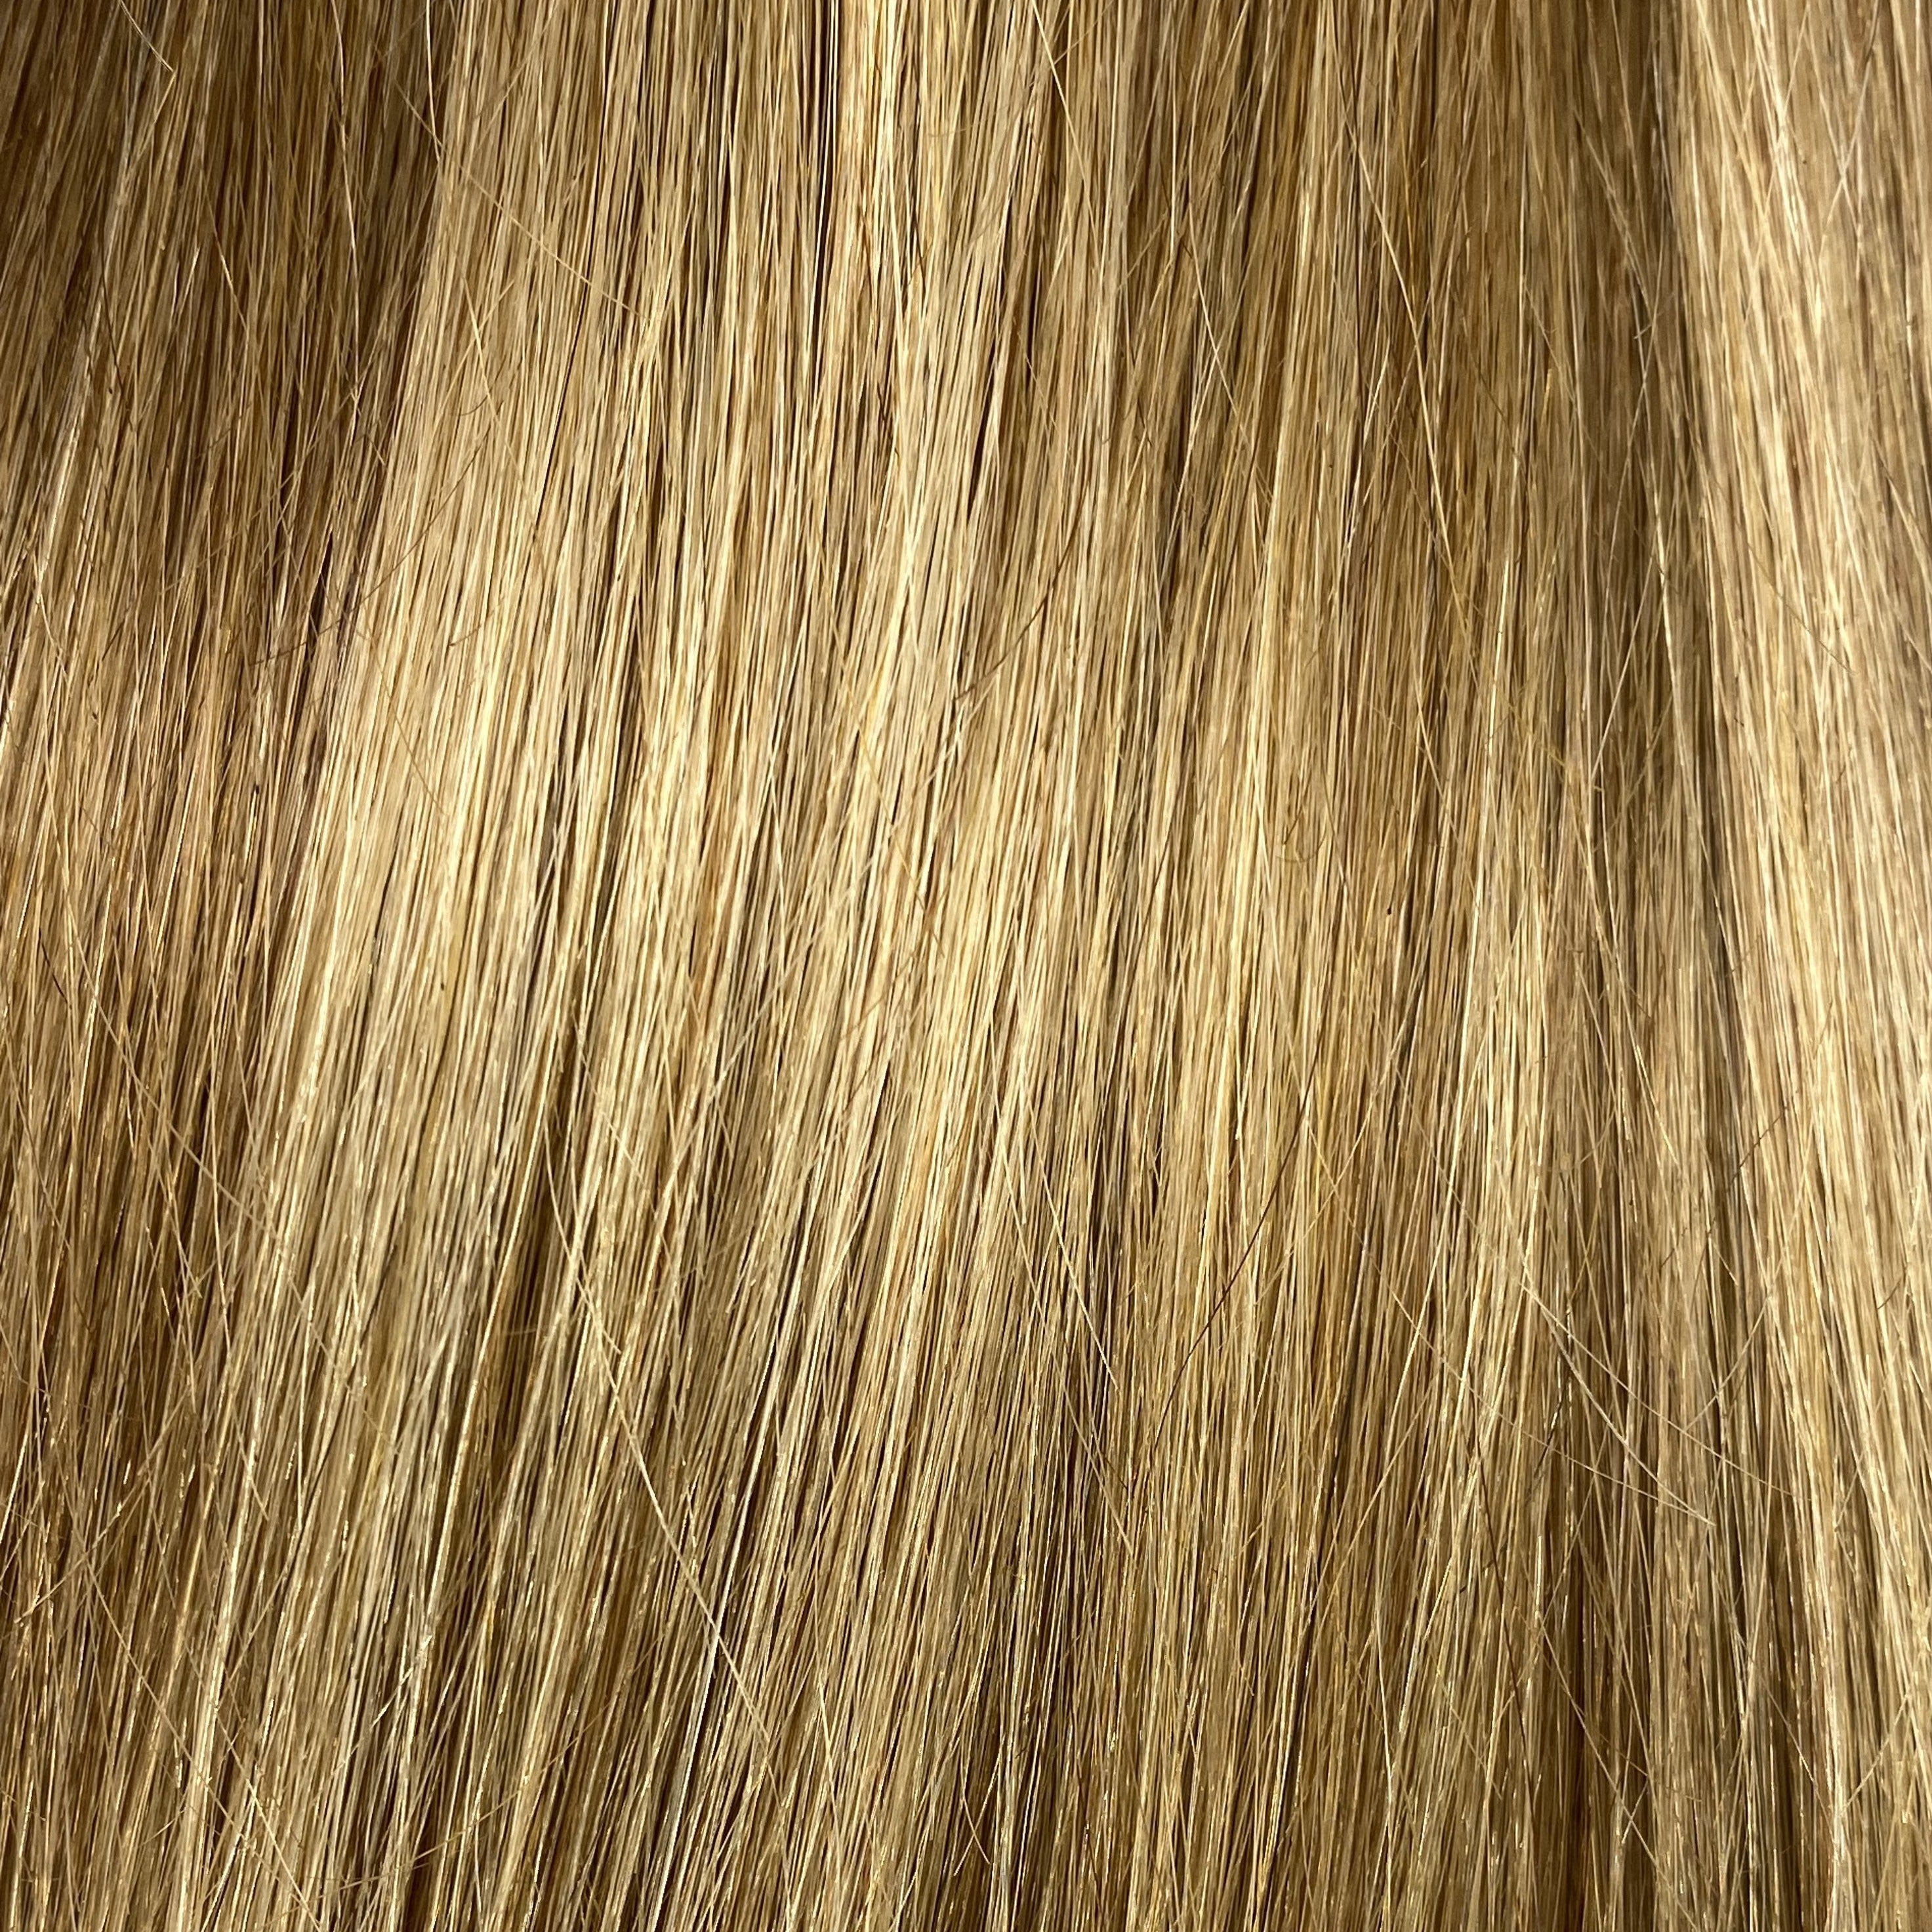 Velo Sale #8/16 - 16 inches - Dark Blonde/Light Golden Blonde